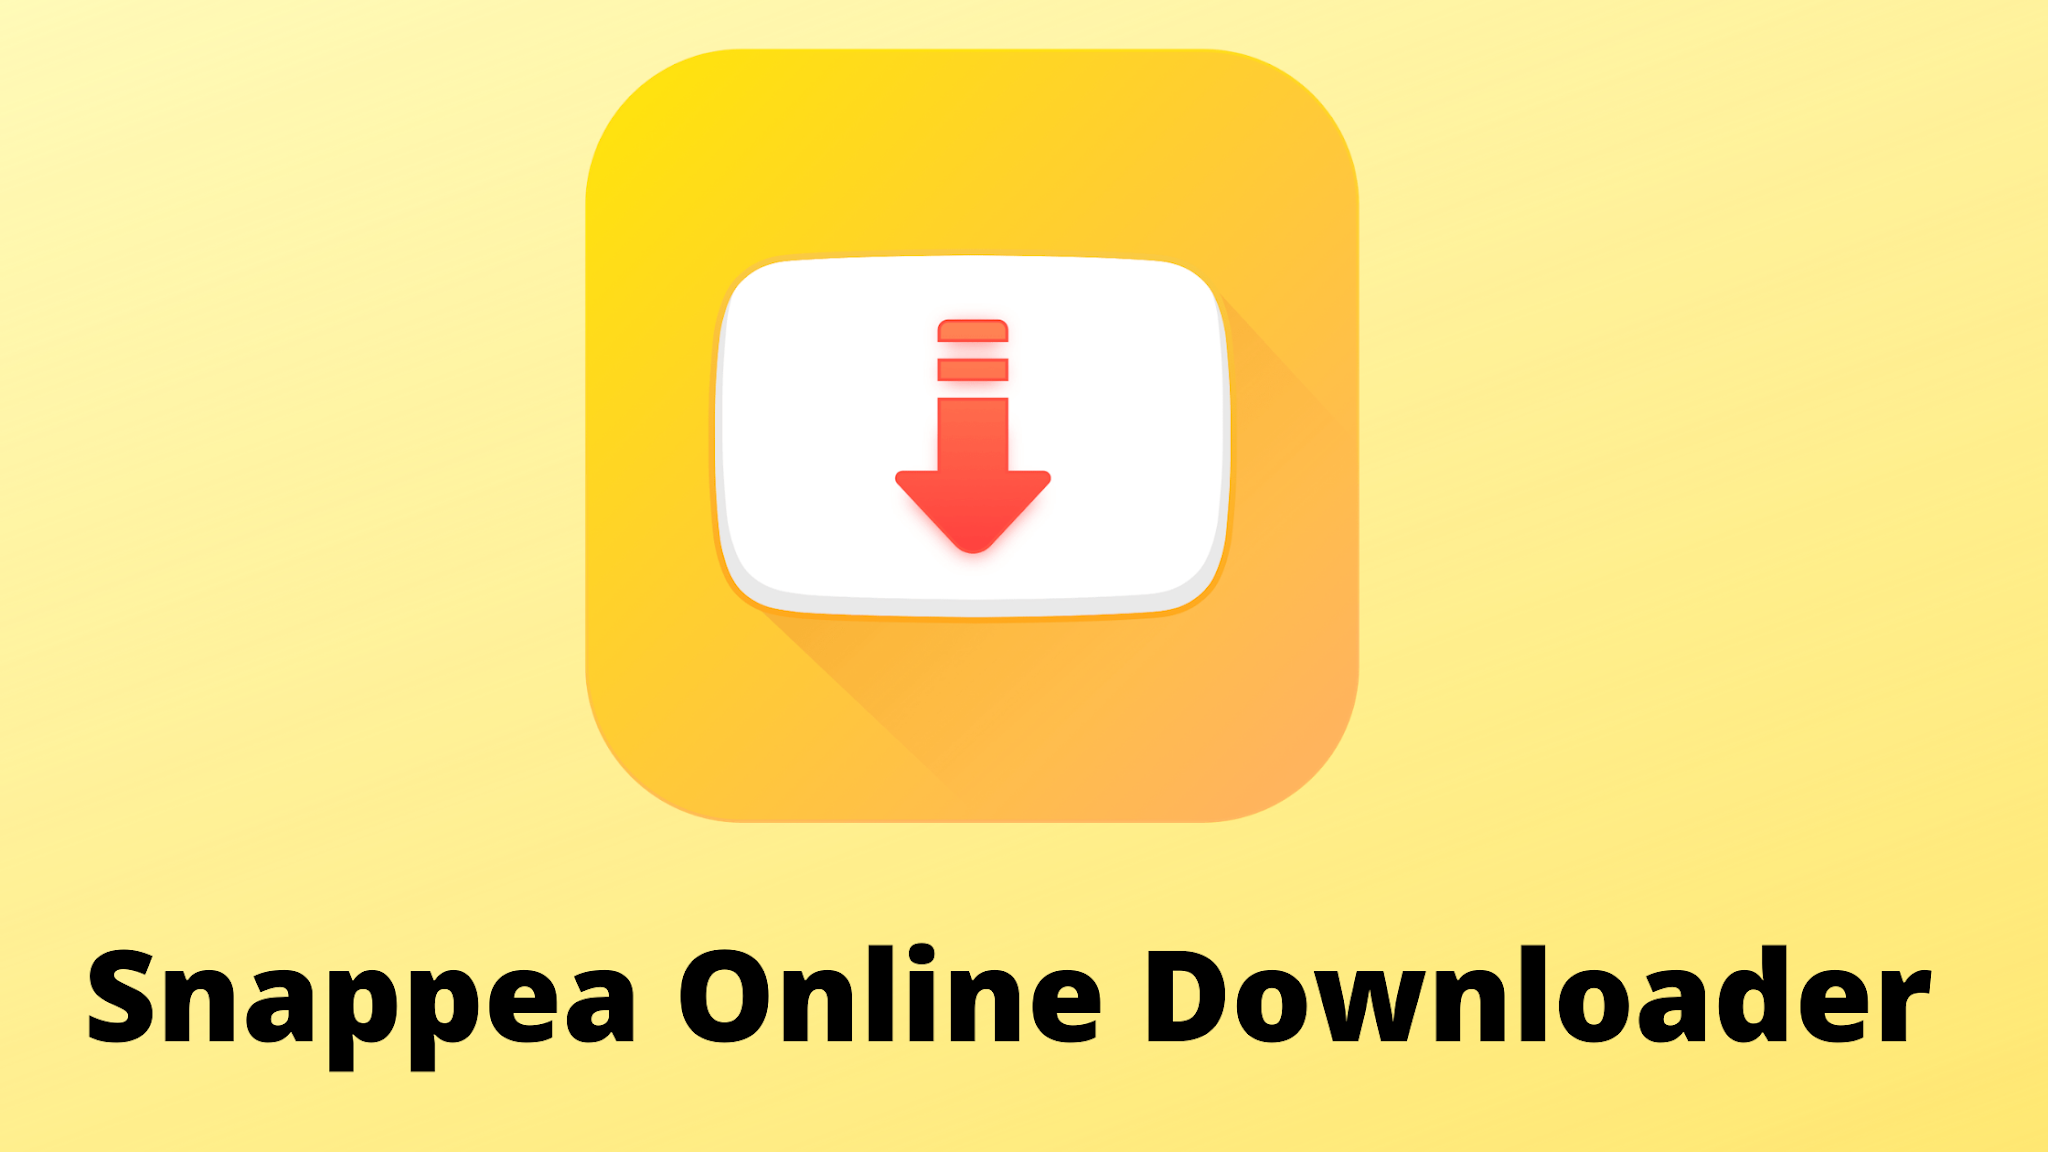 Snappea Online Downloader